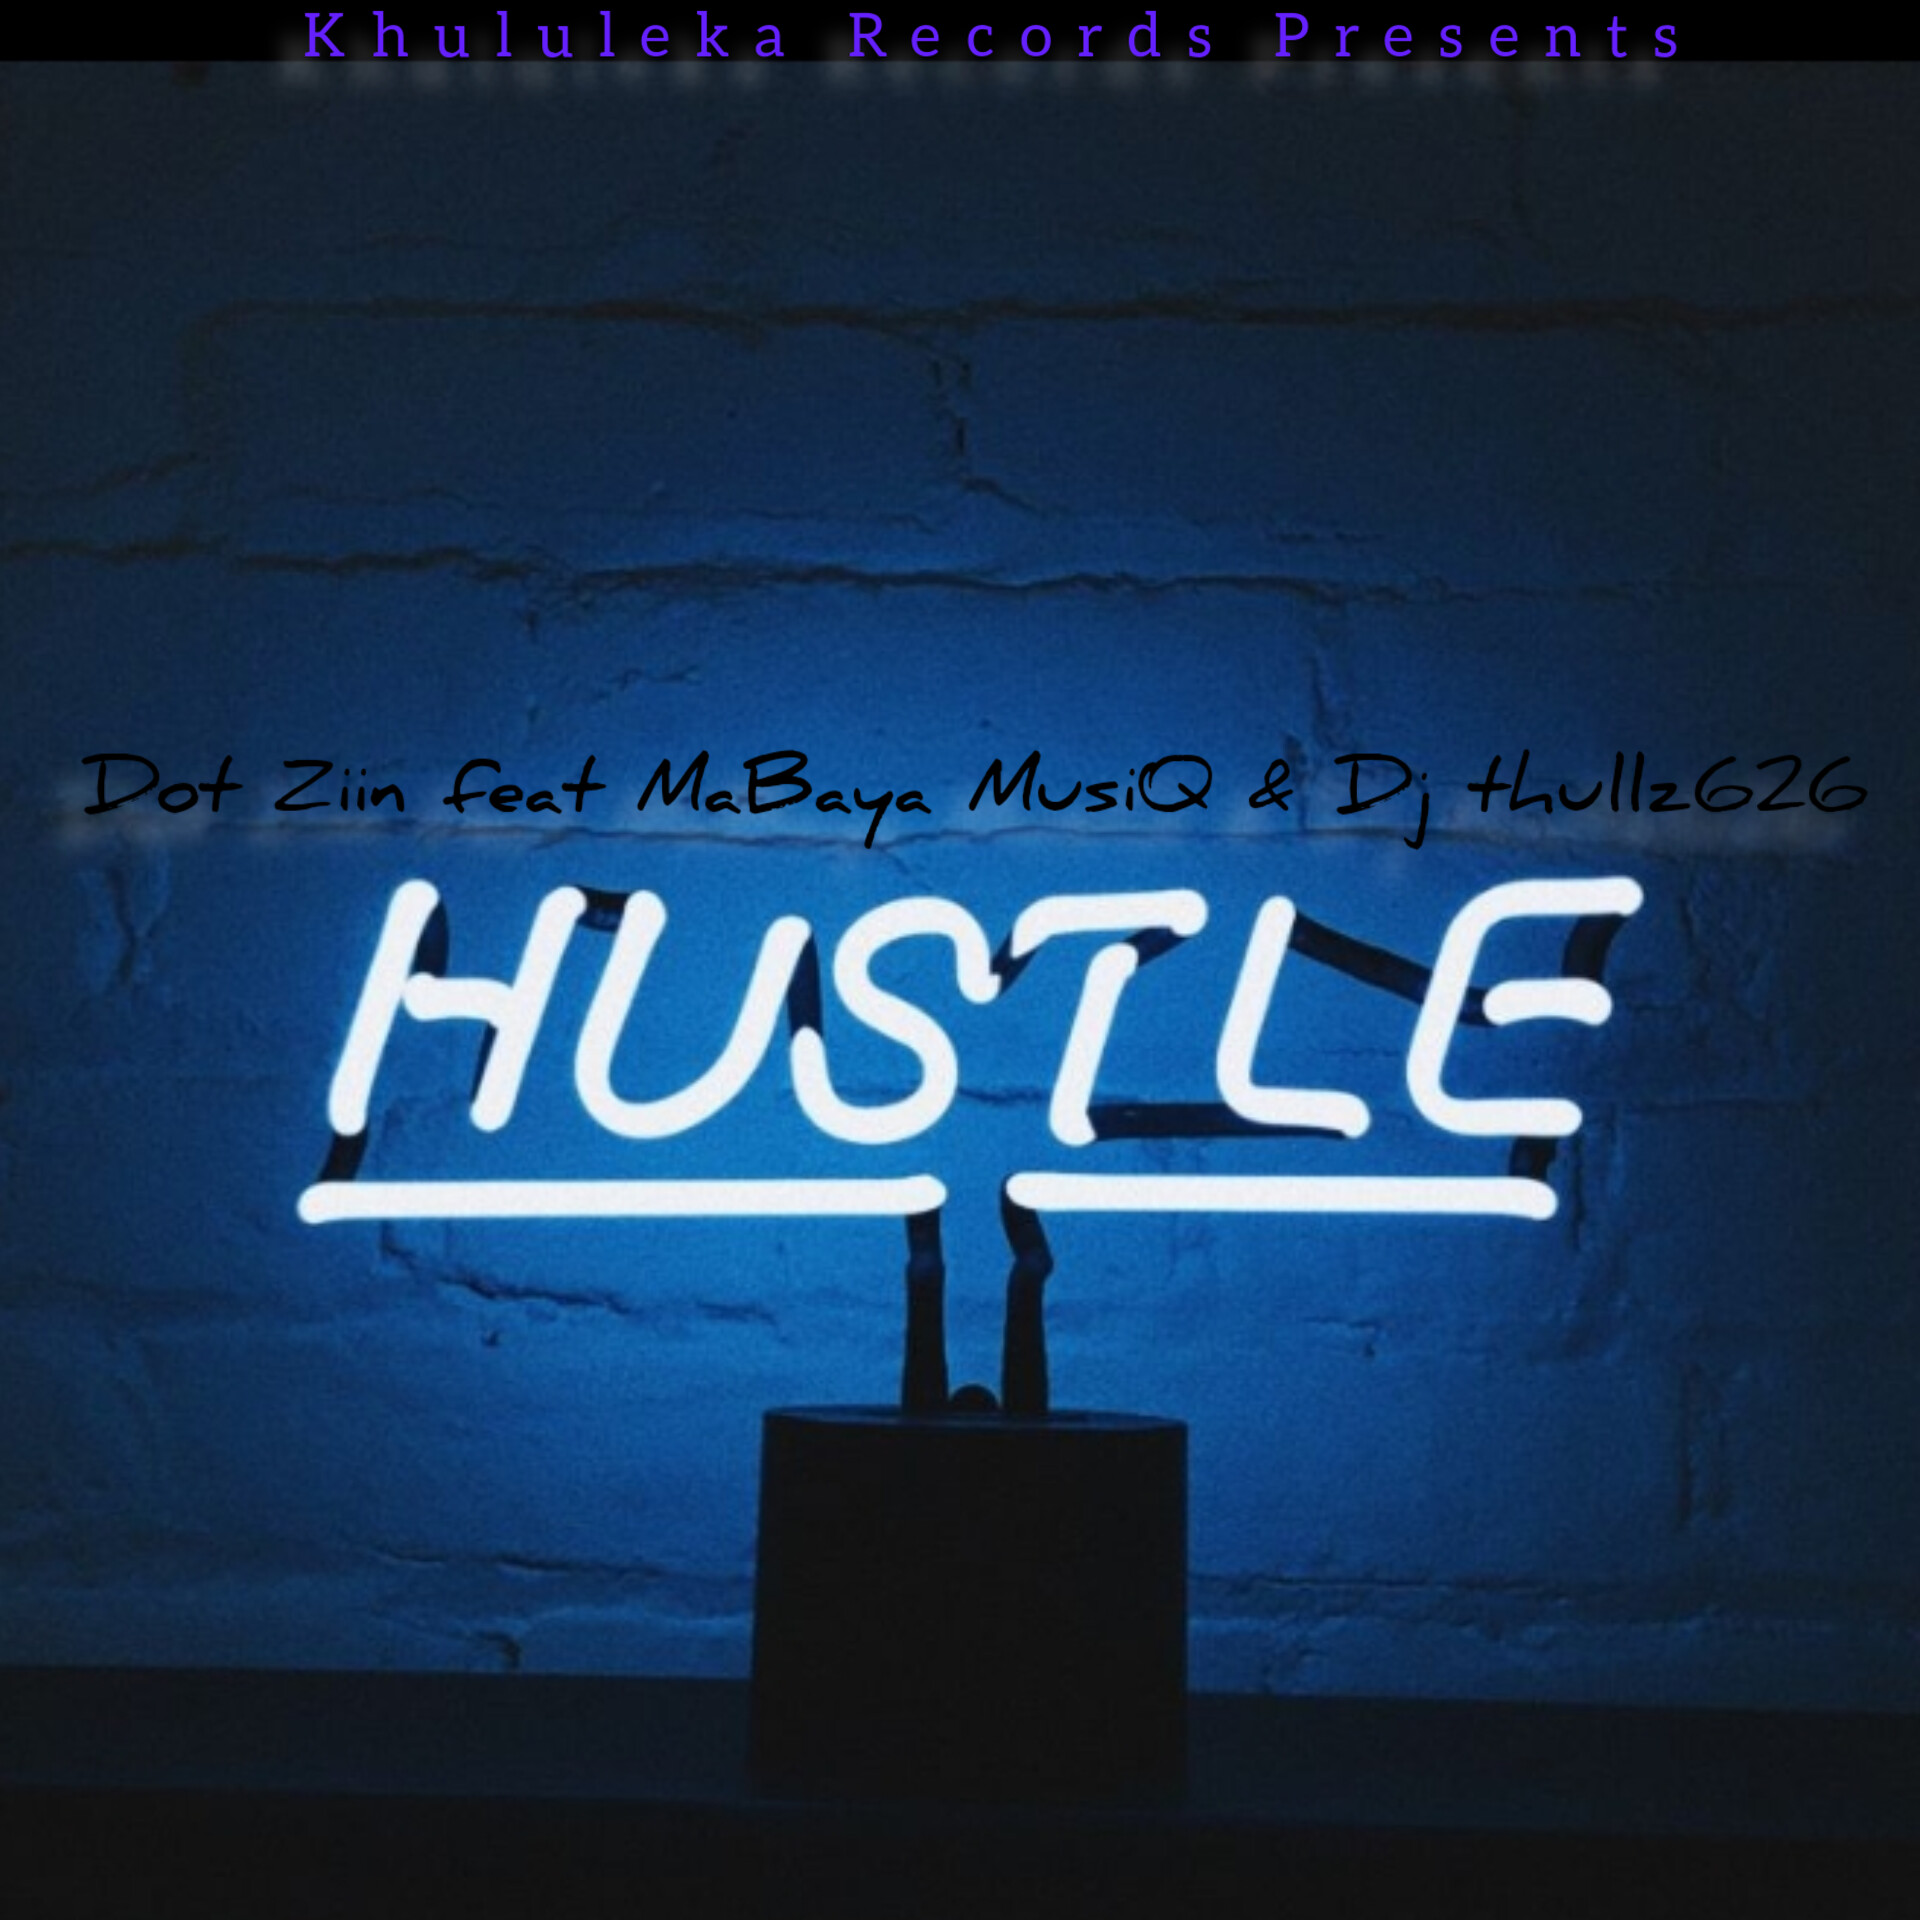 Hustle - Dot Ziin Rsa feat MaBaya MusiQ & Dj thullz626